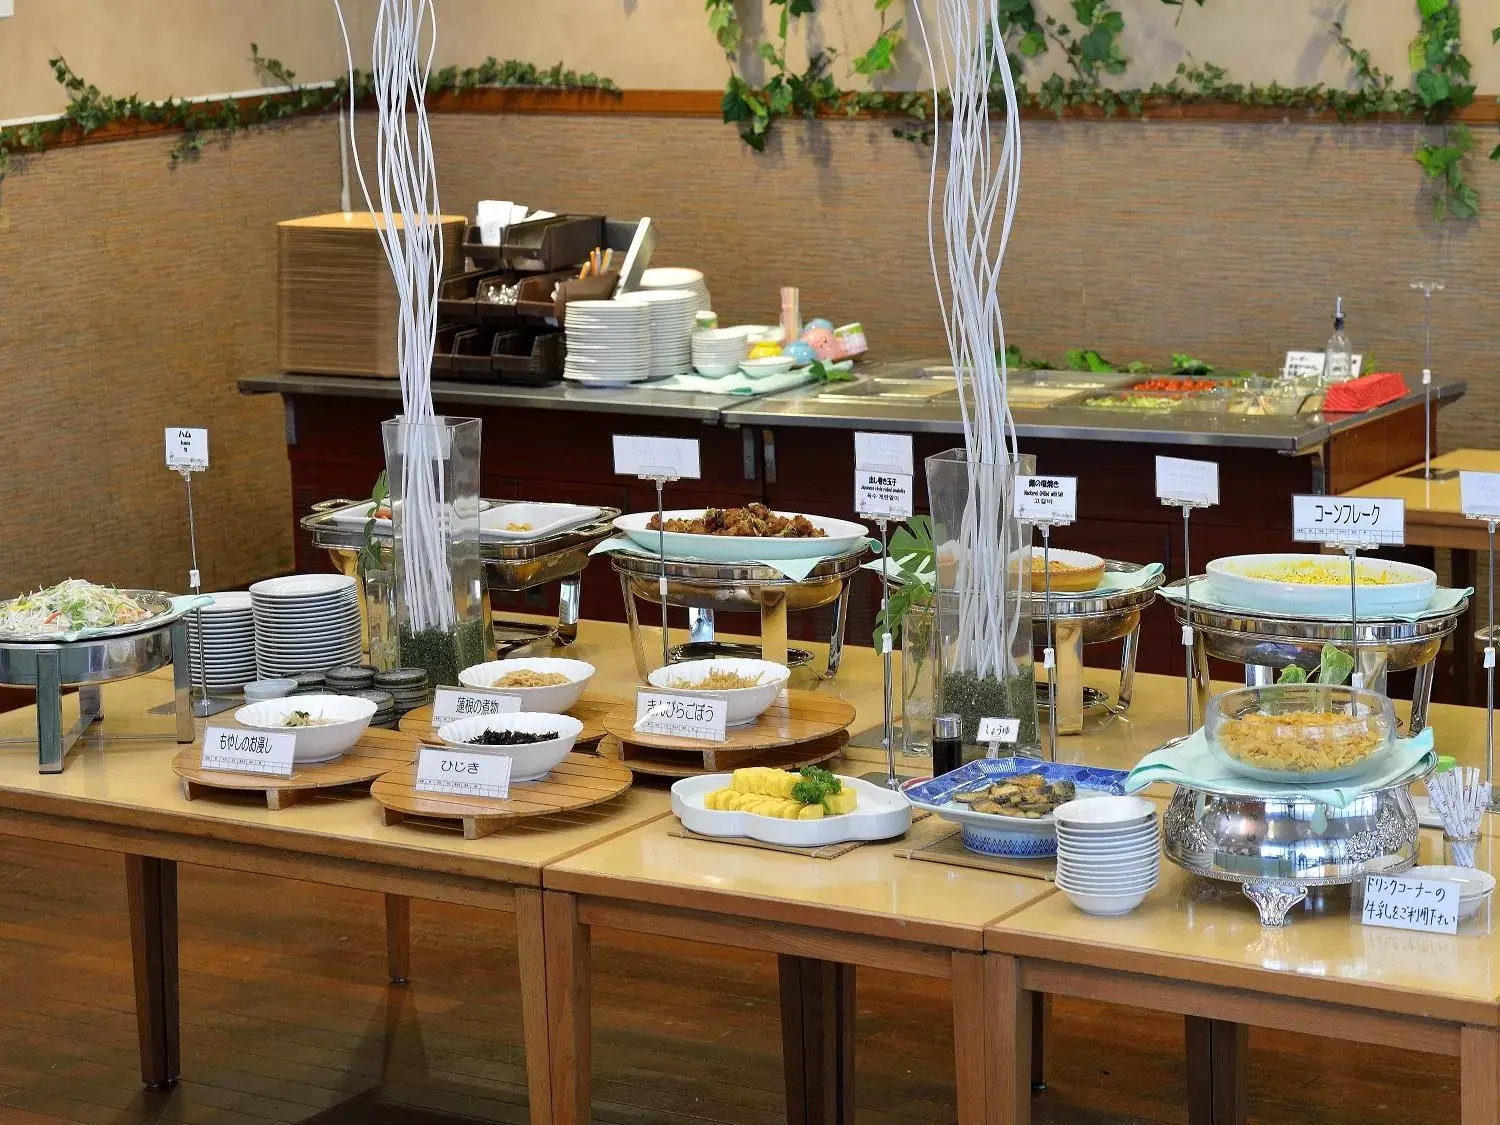 Buffet breakfast in Ark Hotel Royal Fukuoka Tenjin -ROUTE INN HOTELS-